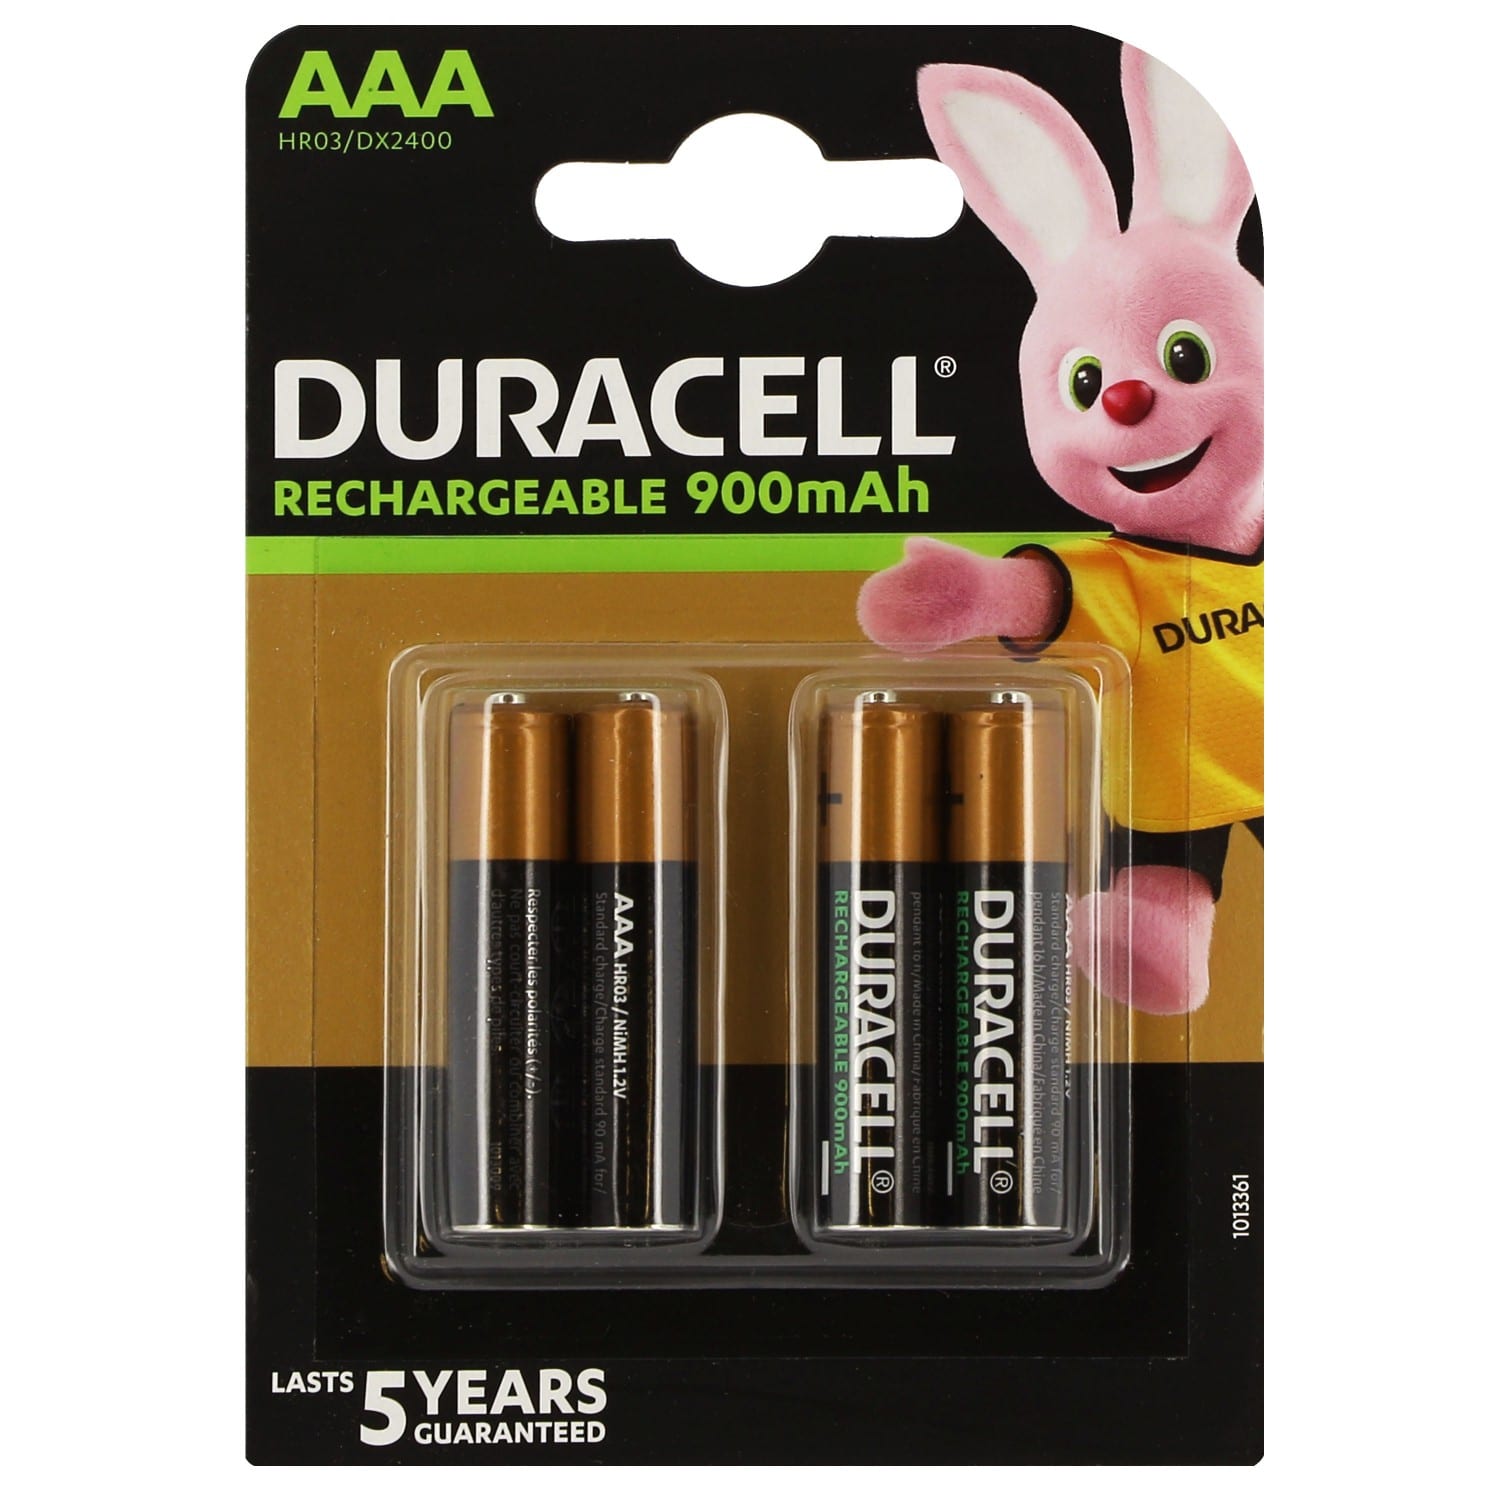 Les piles AA de Duracell- versions traditionnelles ou rechargeables